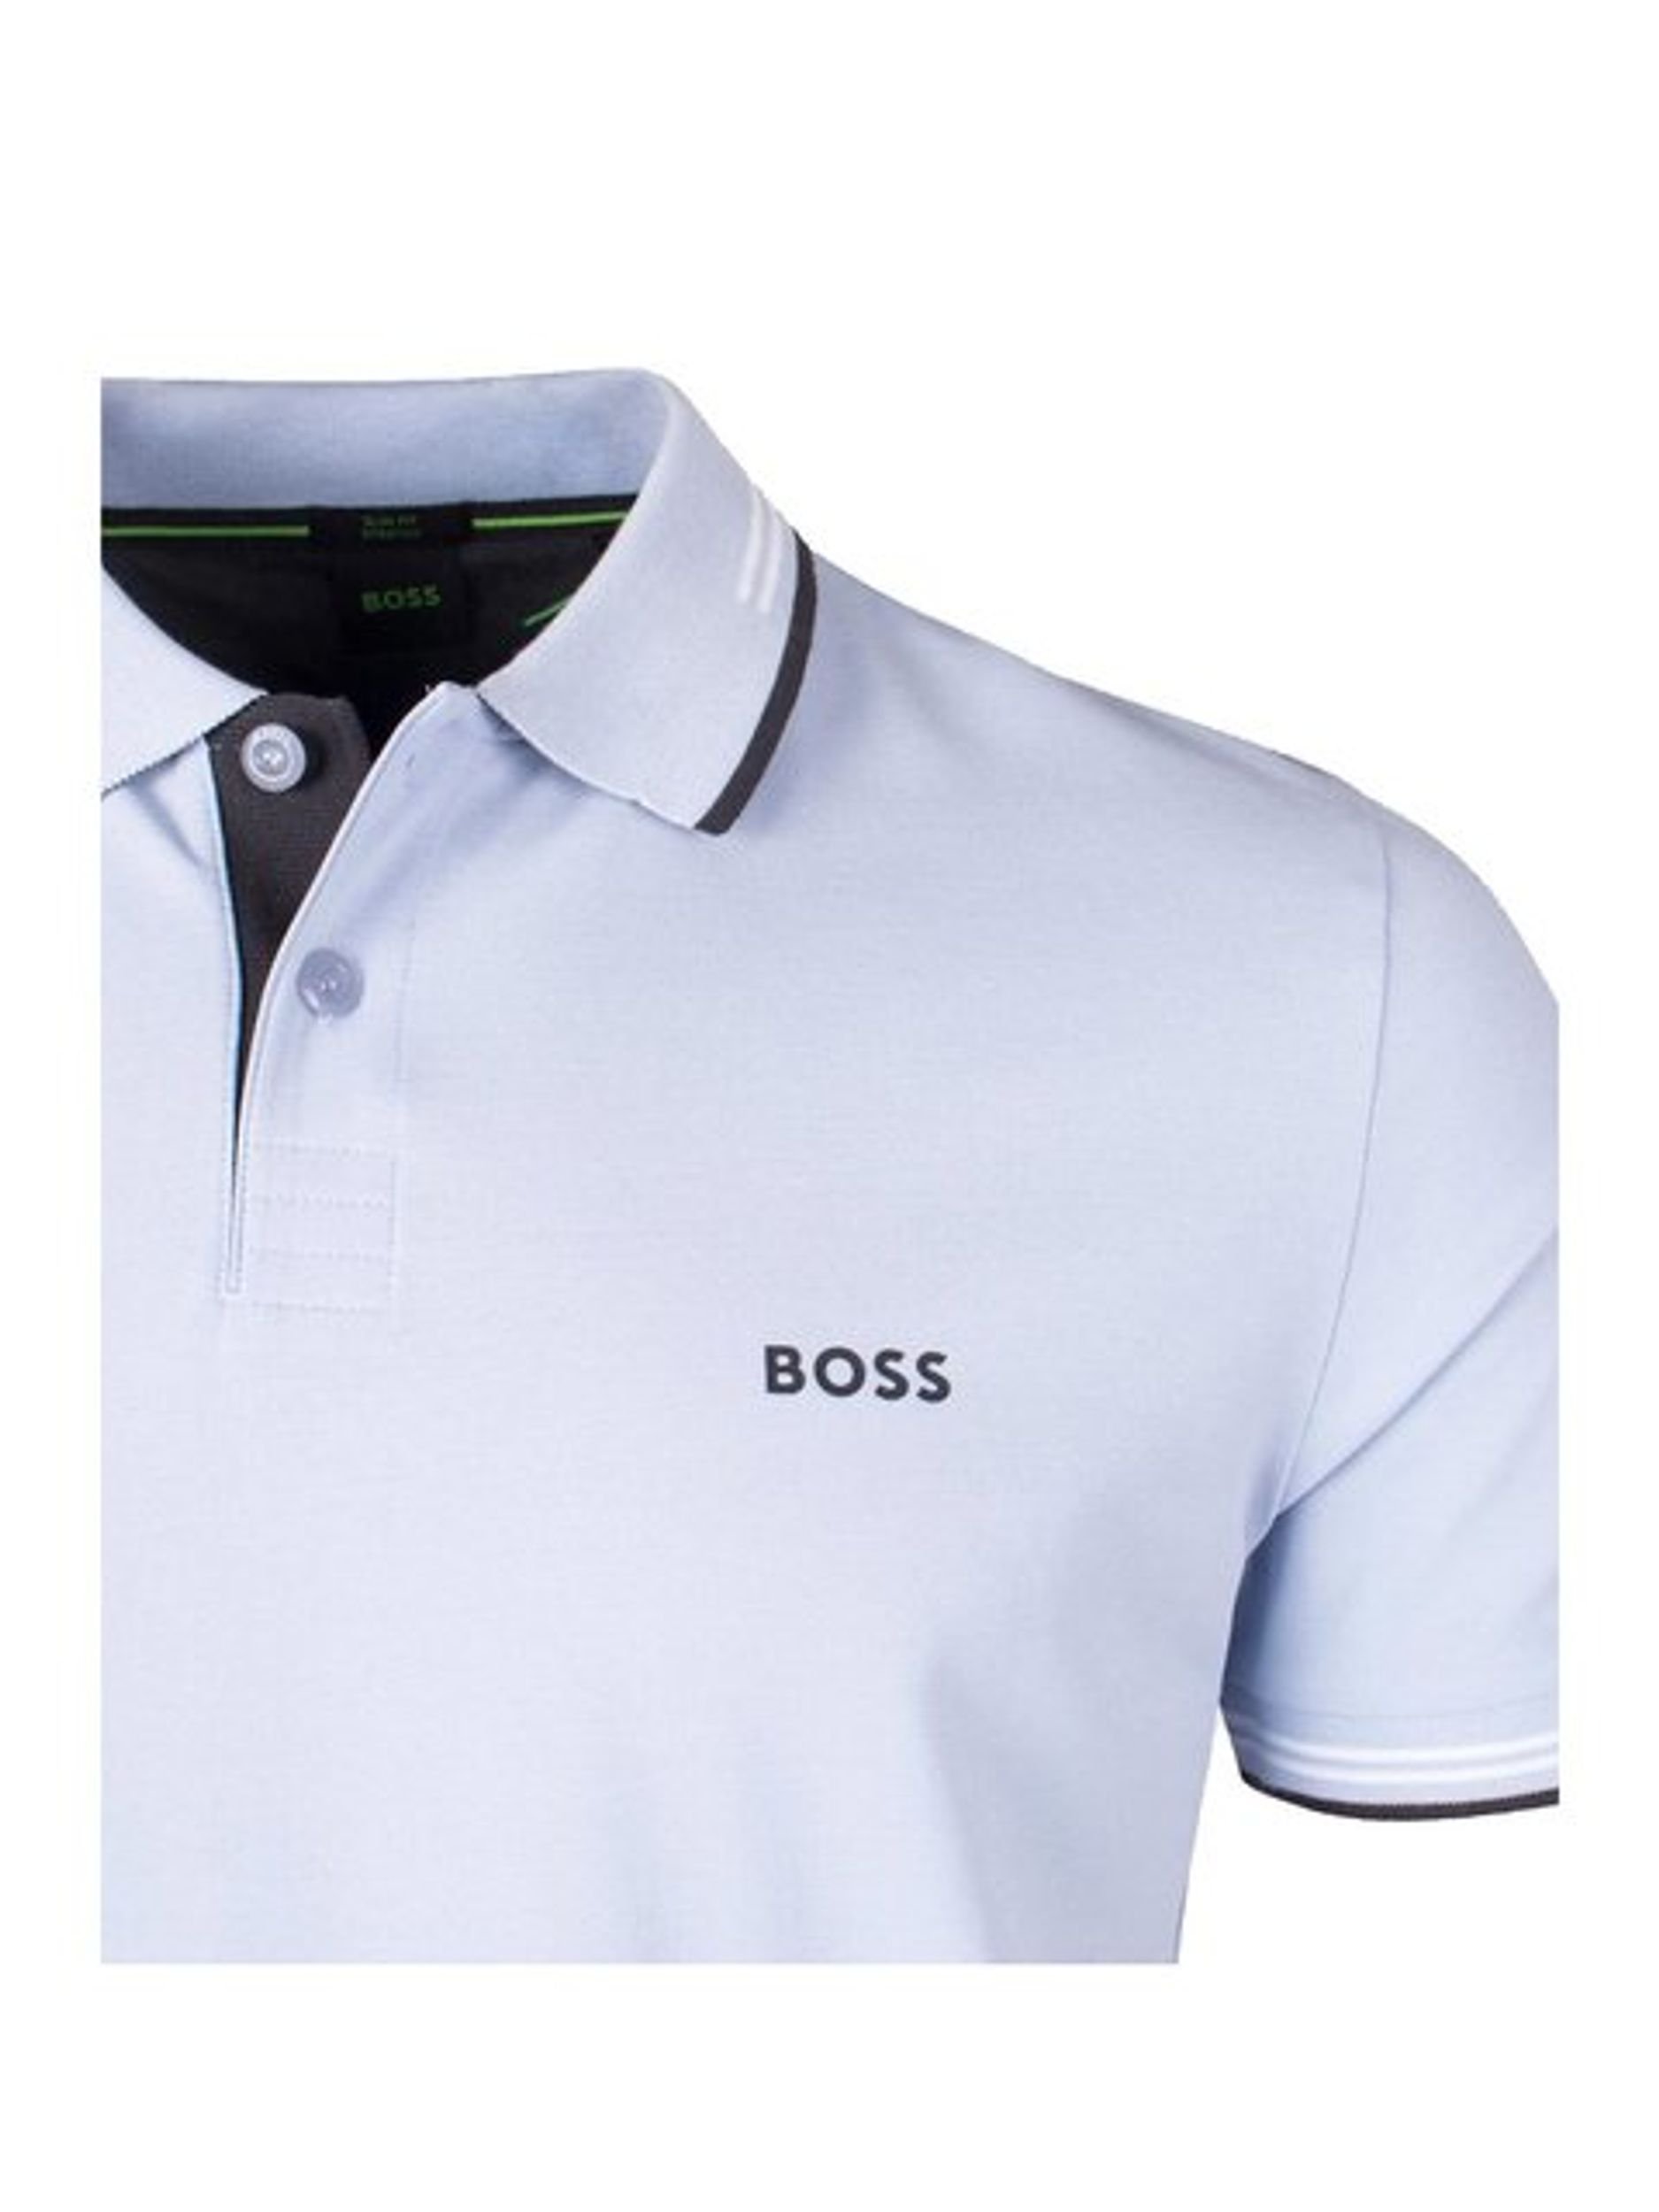 BOSS Green |  BOSS Green Poloshirt  | XXL | 2103_527